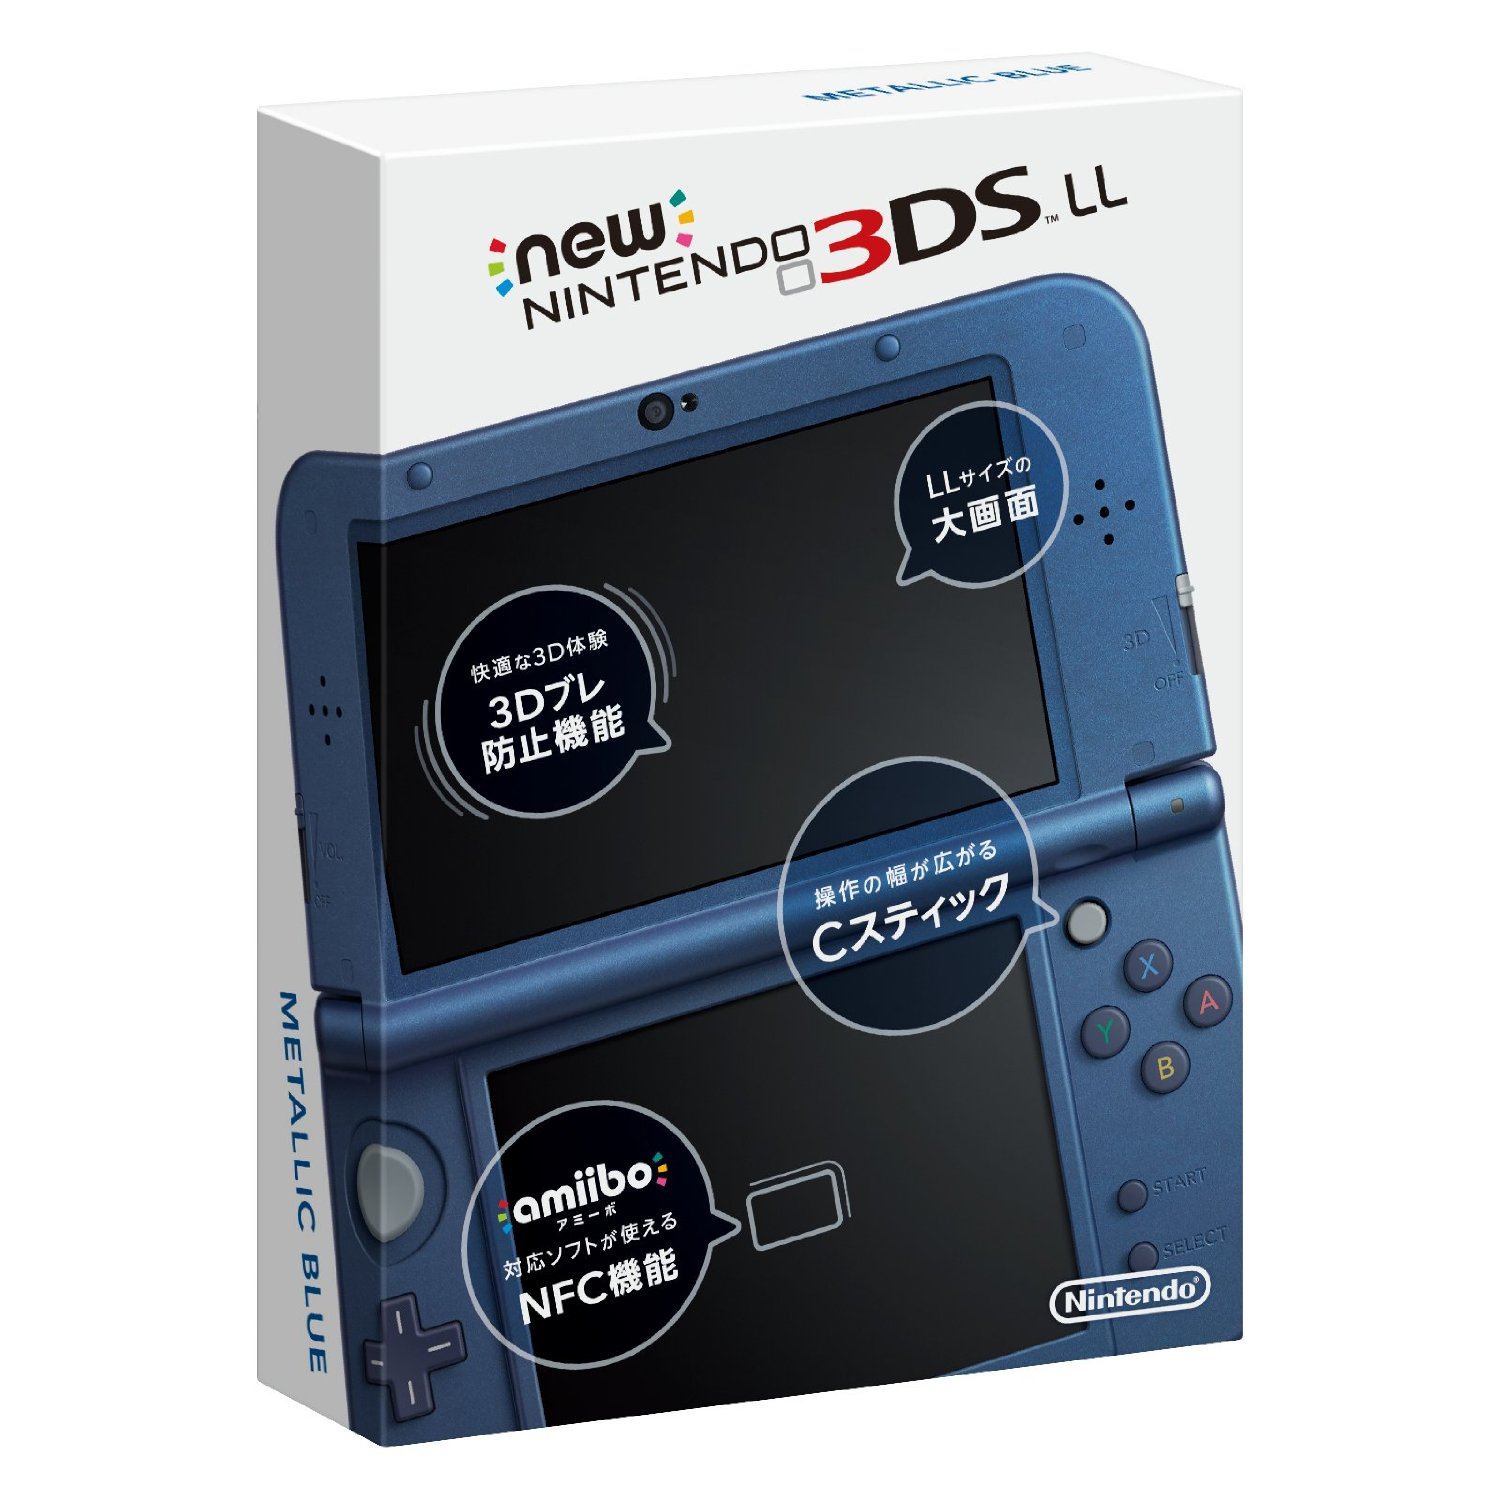 New Nintendo 3DS LL (Metallic Blue) - Bitcoin & Lightning accepted